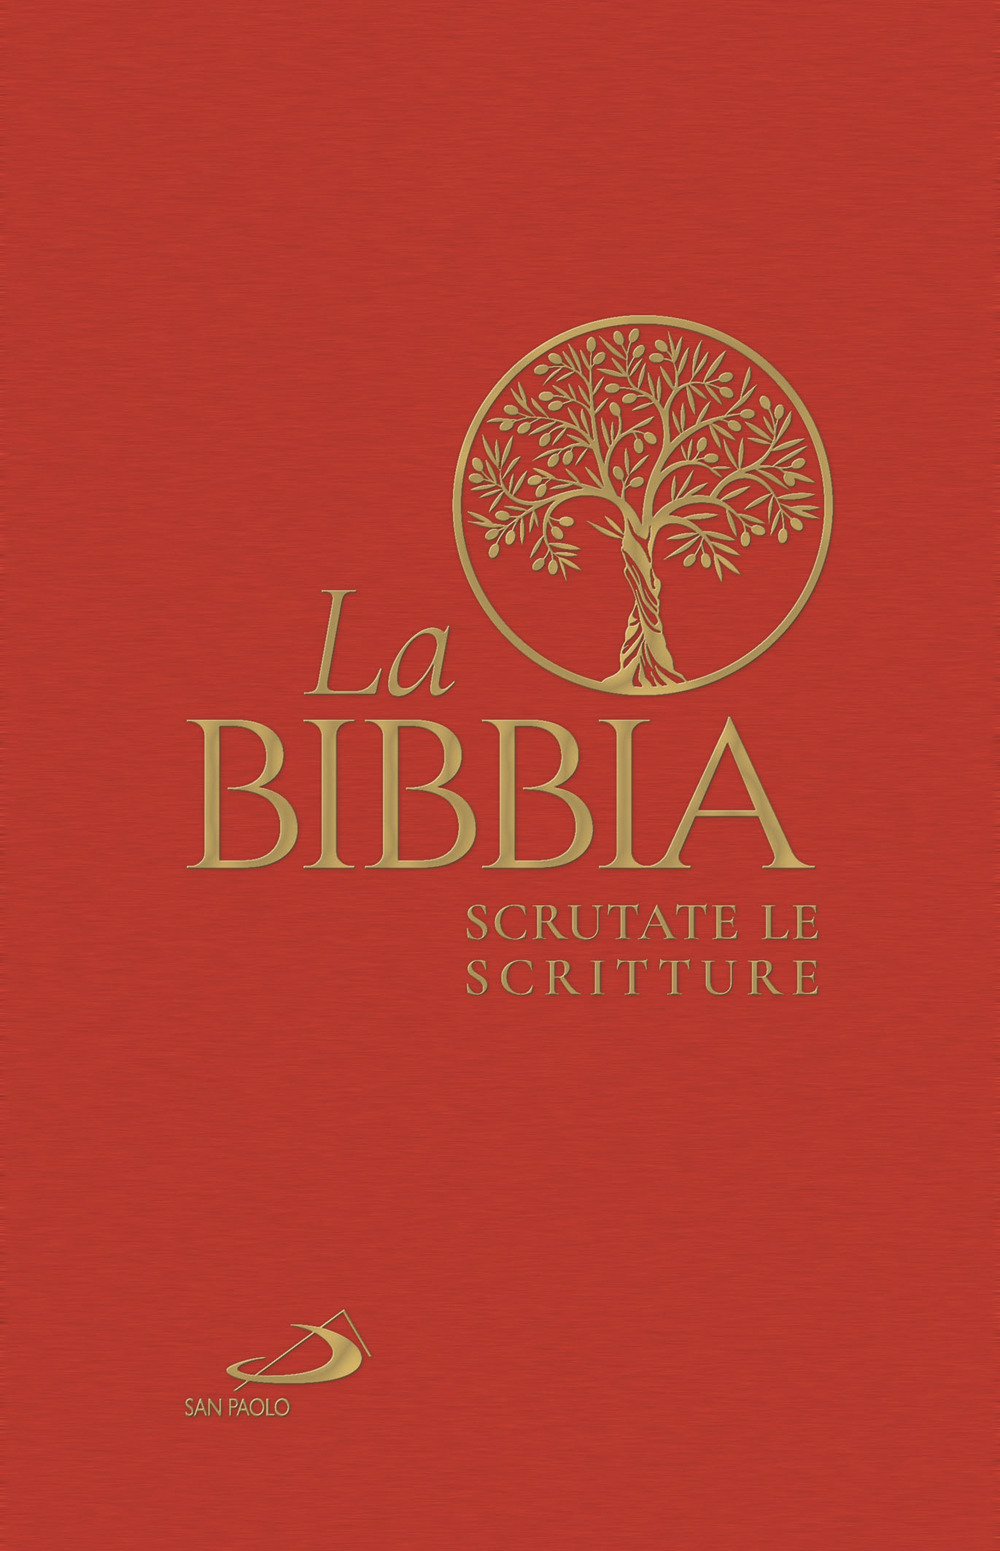 Libri Bibbia. Scrutate Le Scritture (La) NUOVO SIGILLATO, EDIZIONE DEL 14/10/2020 SUBITO DISPONIBILE